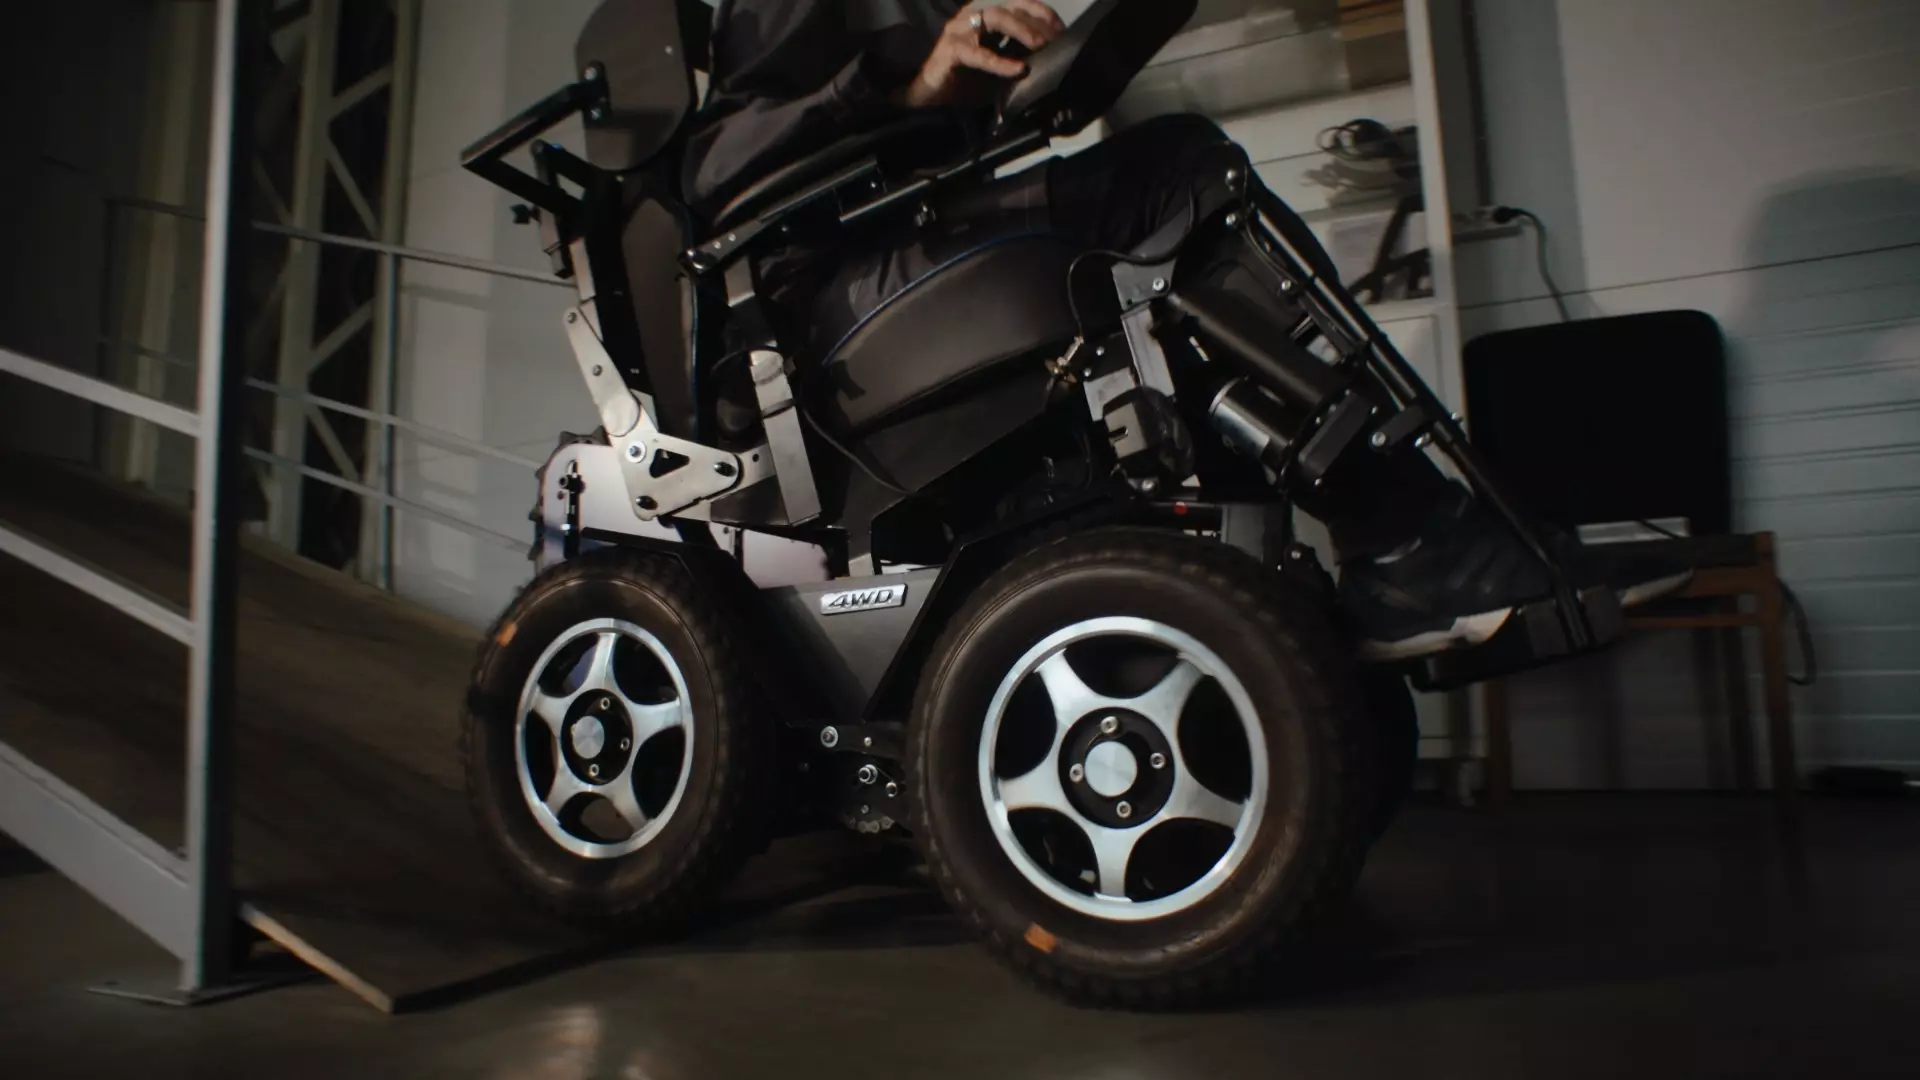 Лестница не преграда: люди с ОВЗ теперь могут пользоваться уникальными колясками